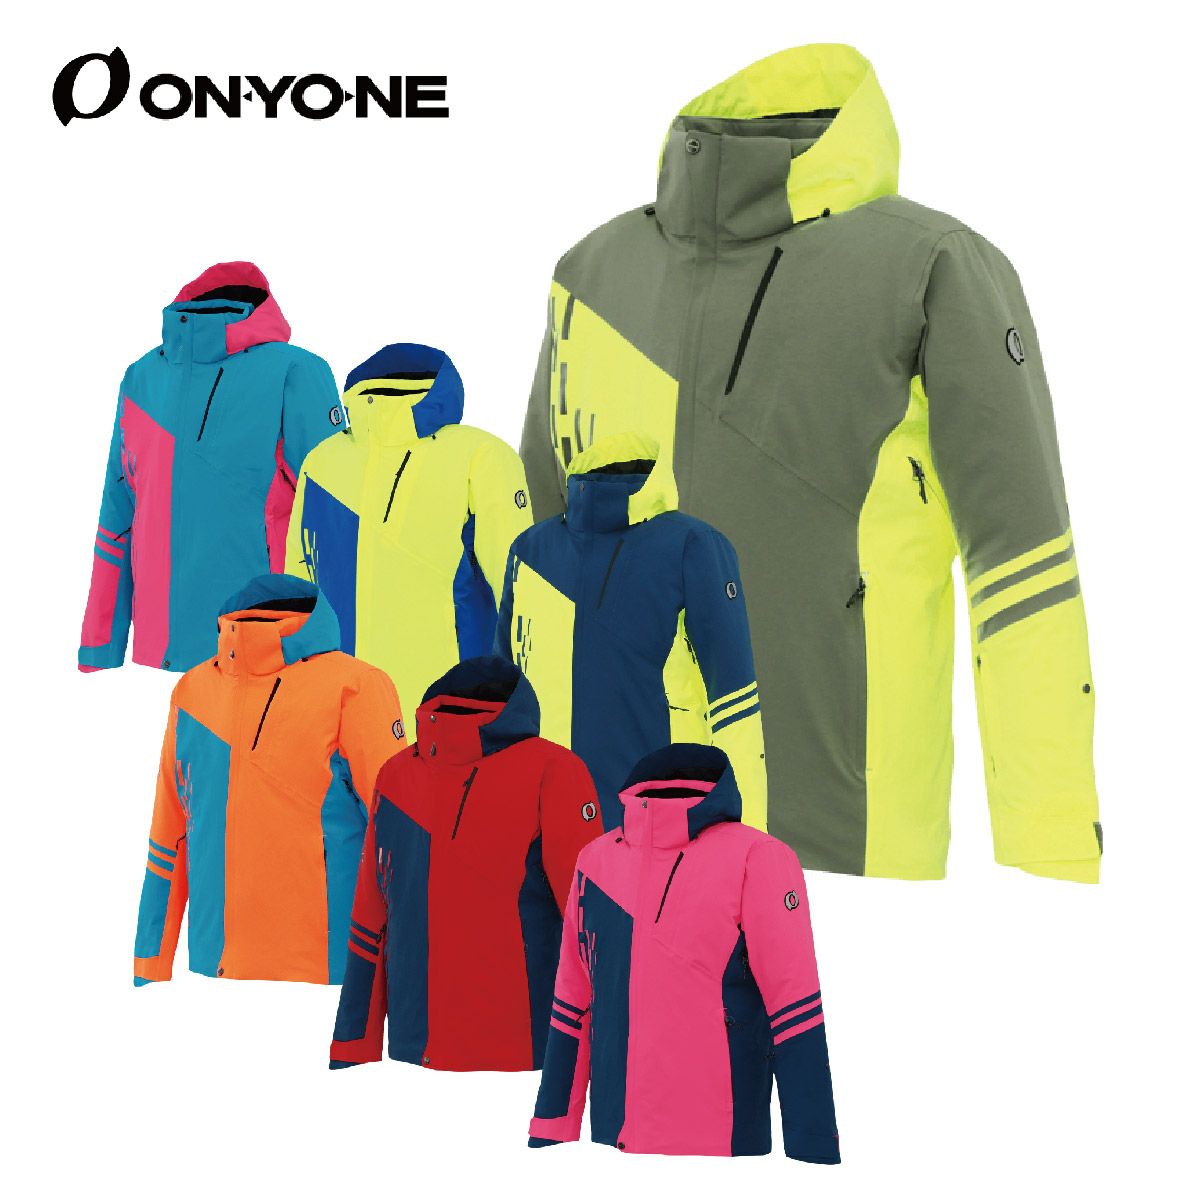 オンヨネ ジャケット メンズ スキーウェア - スポーツウェアの人気商品 